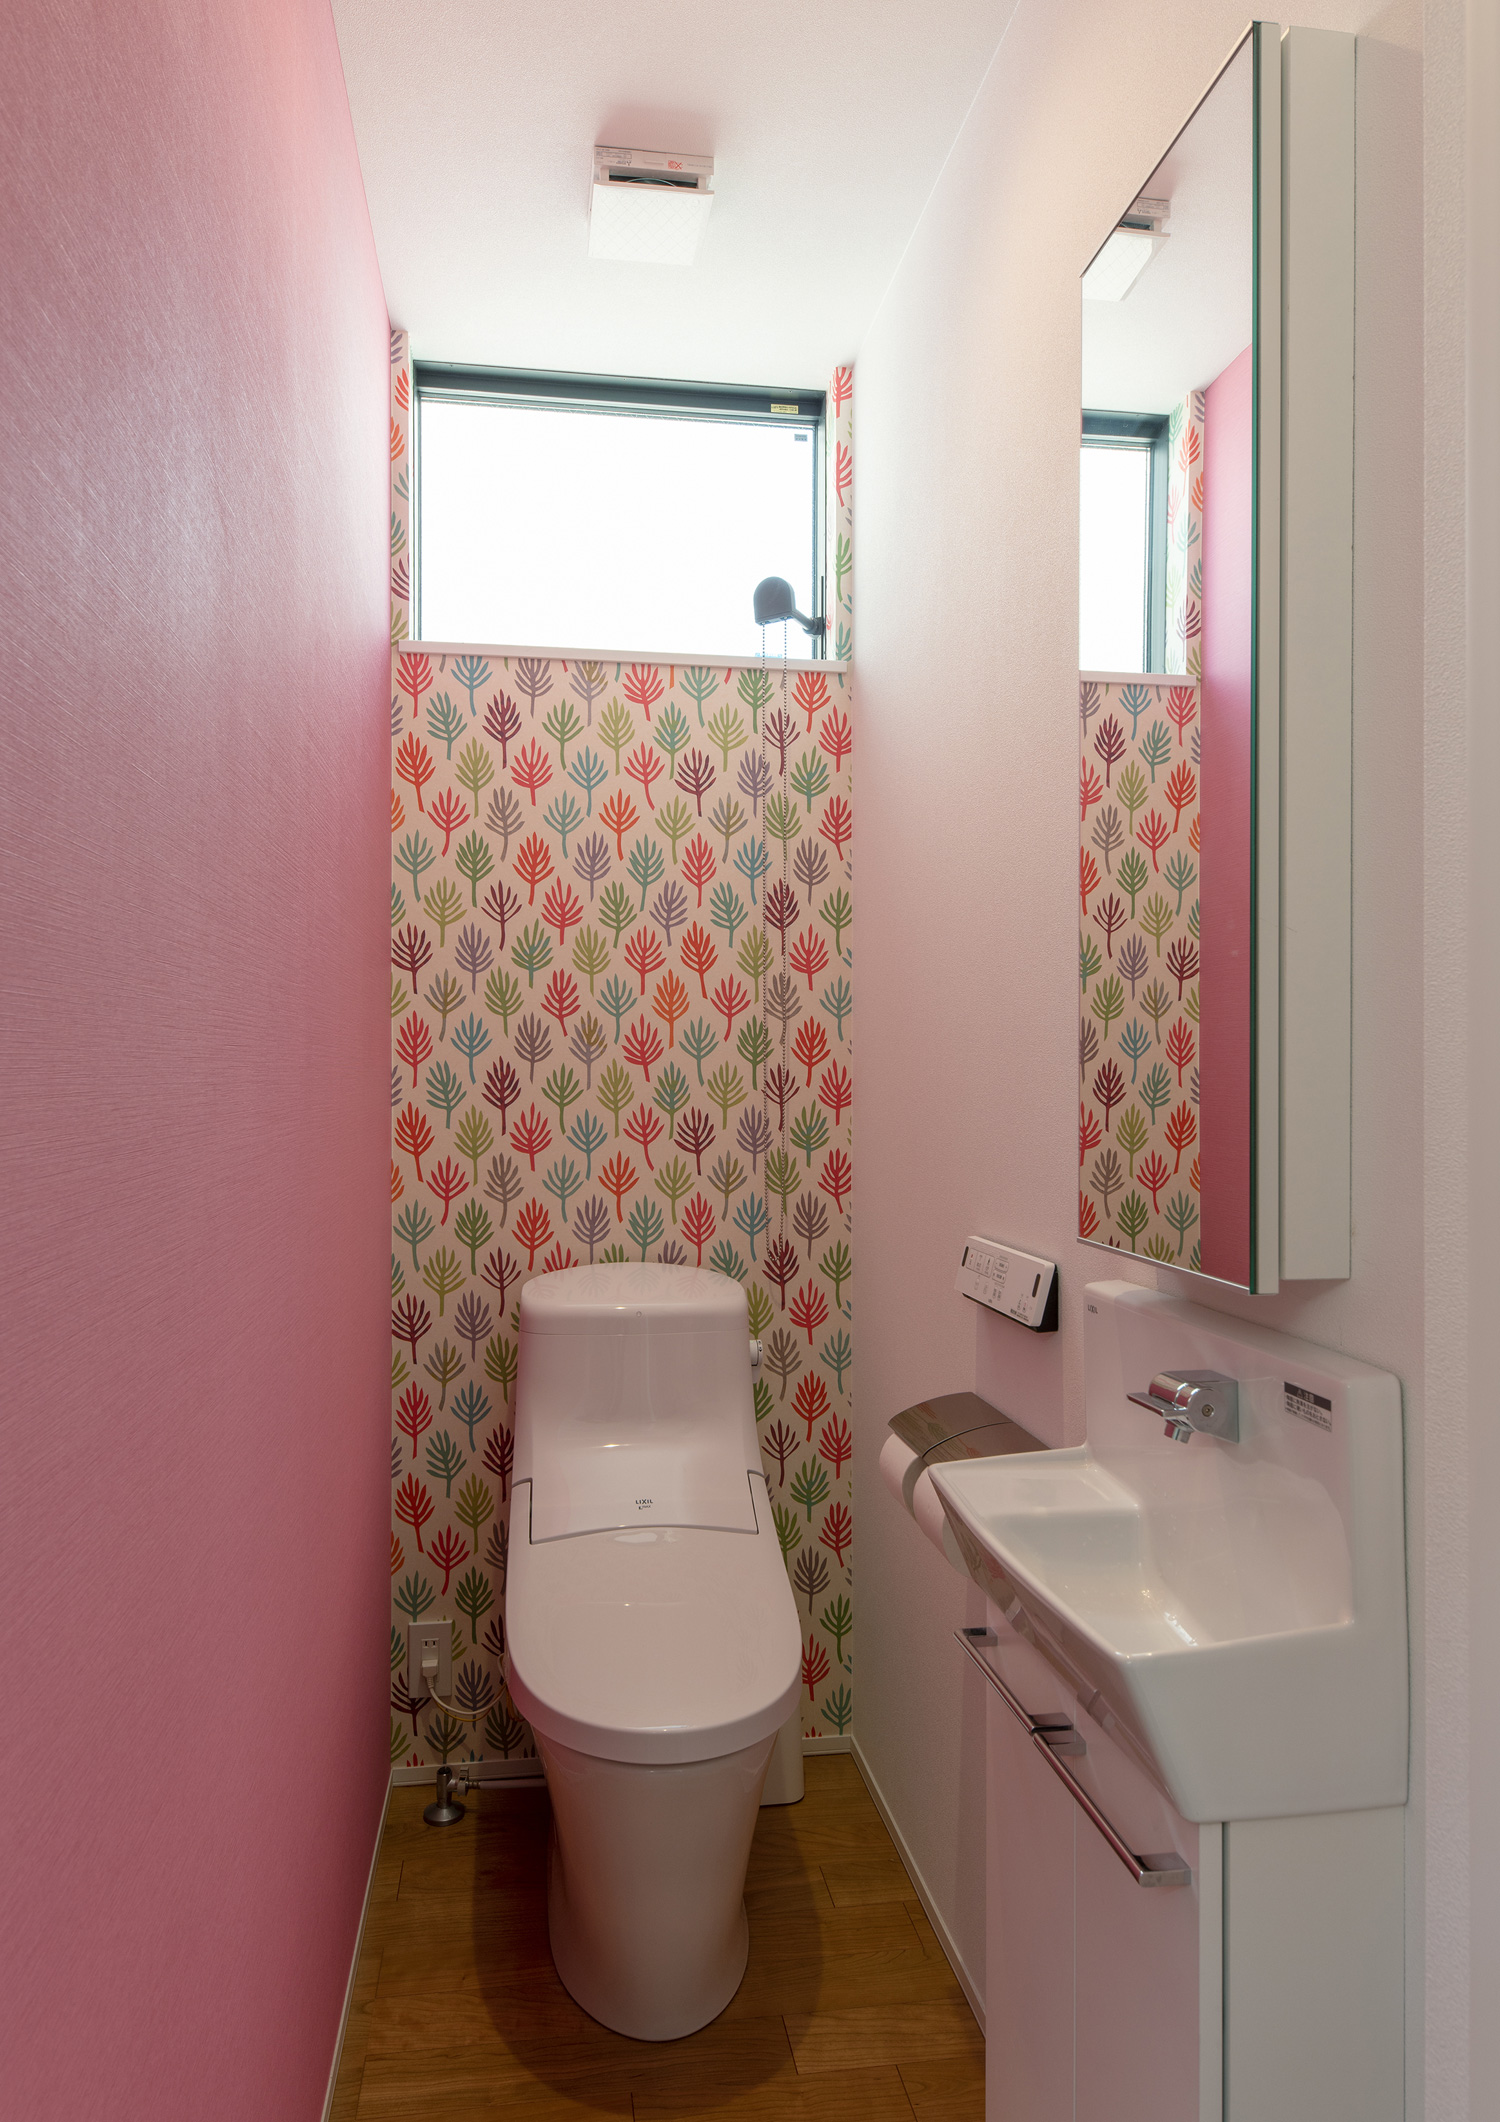 ピンク色のクロスと柄のクロスを設けたトイレ・デザイン住宅